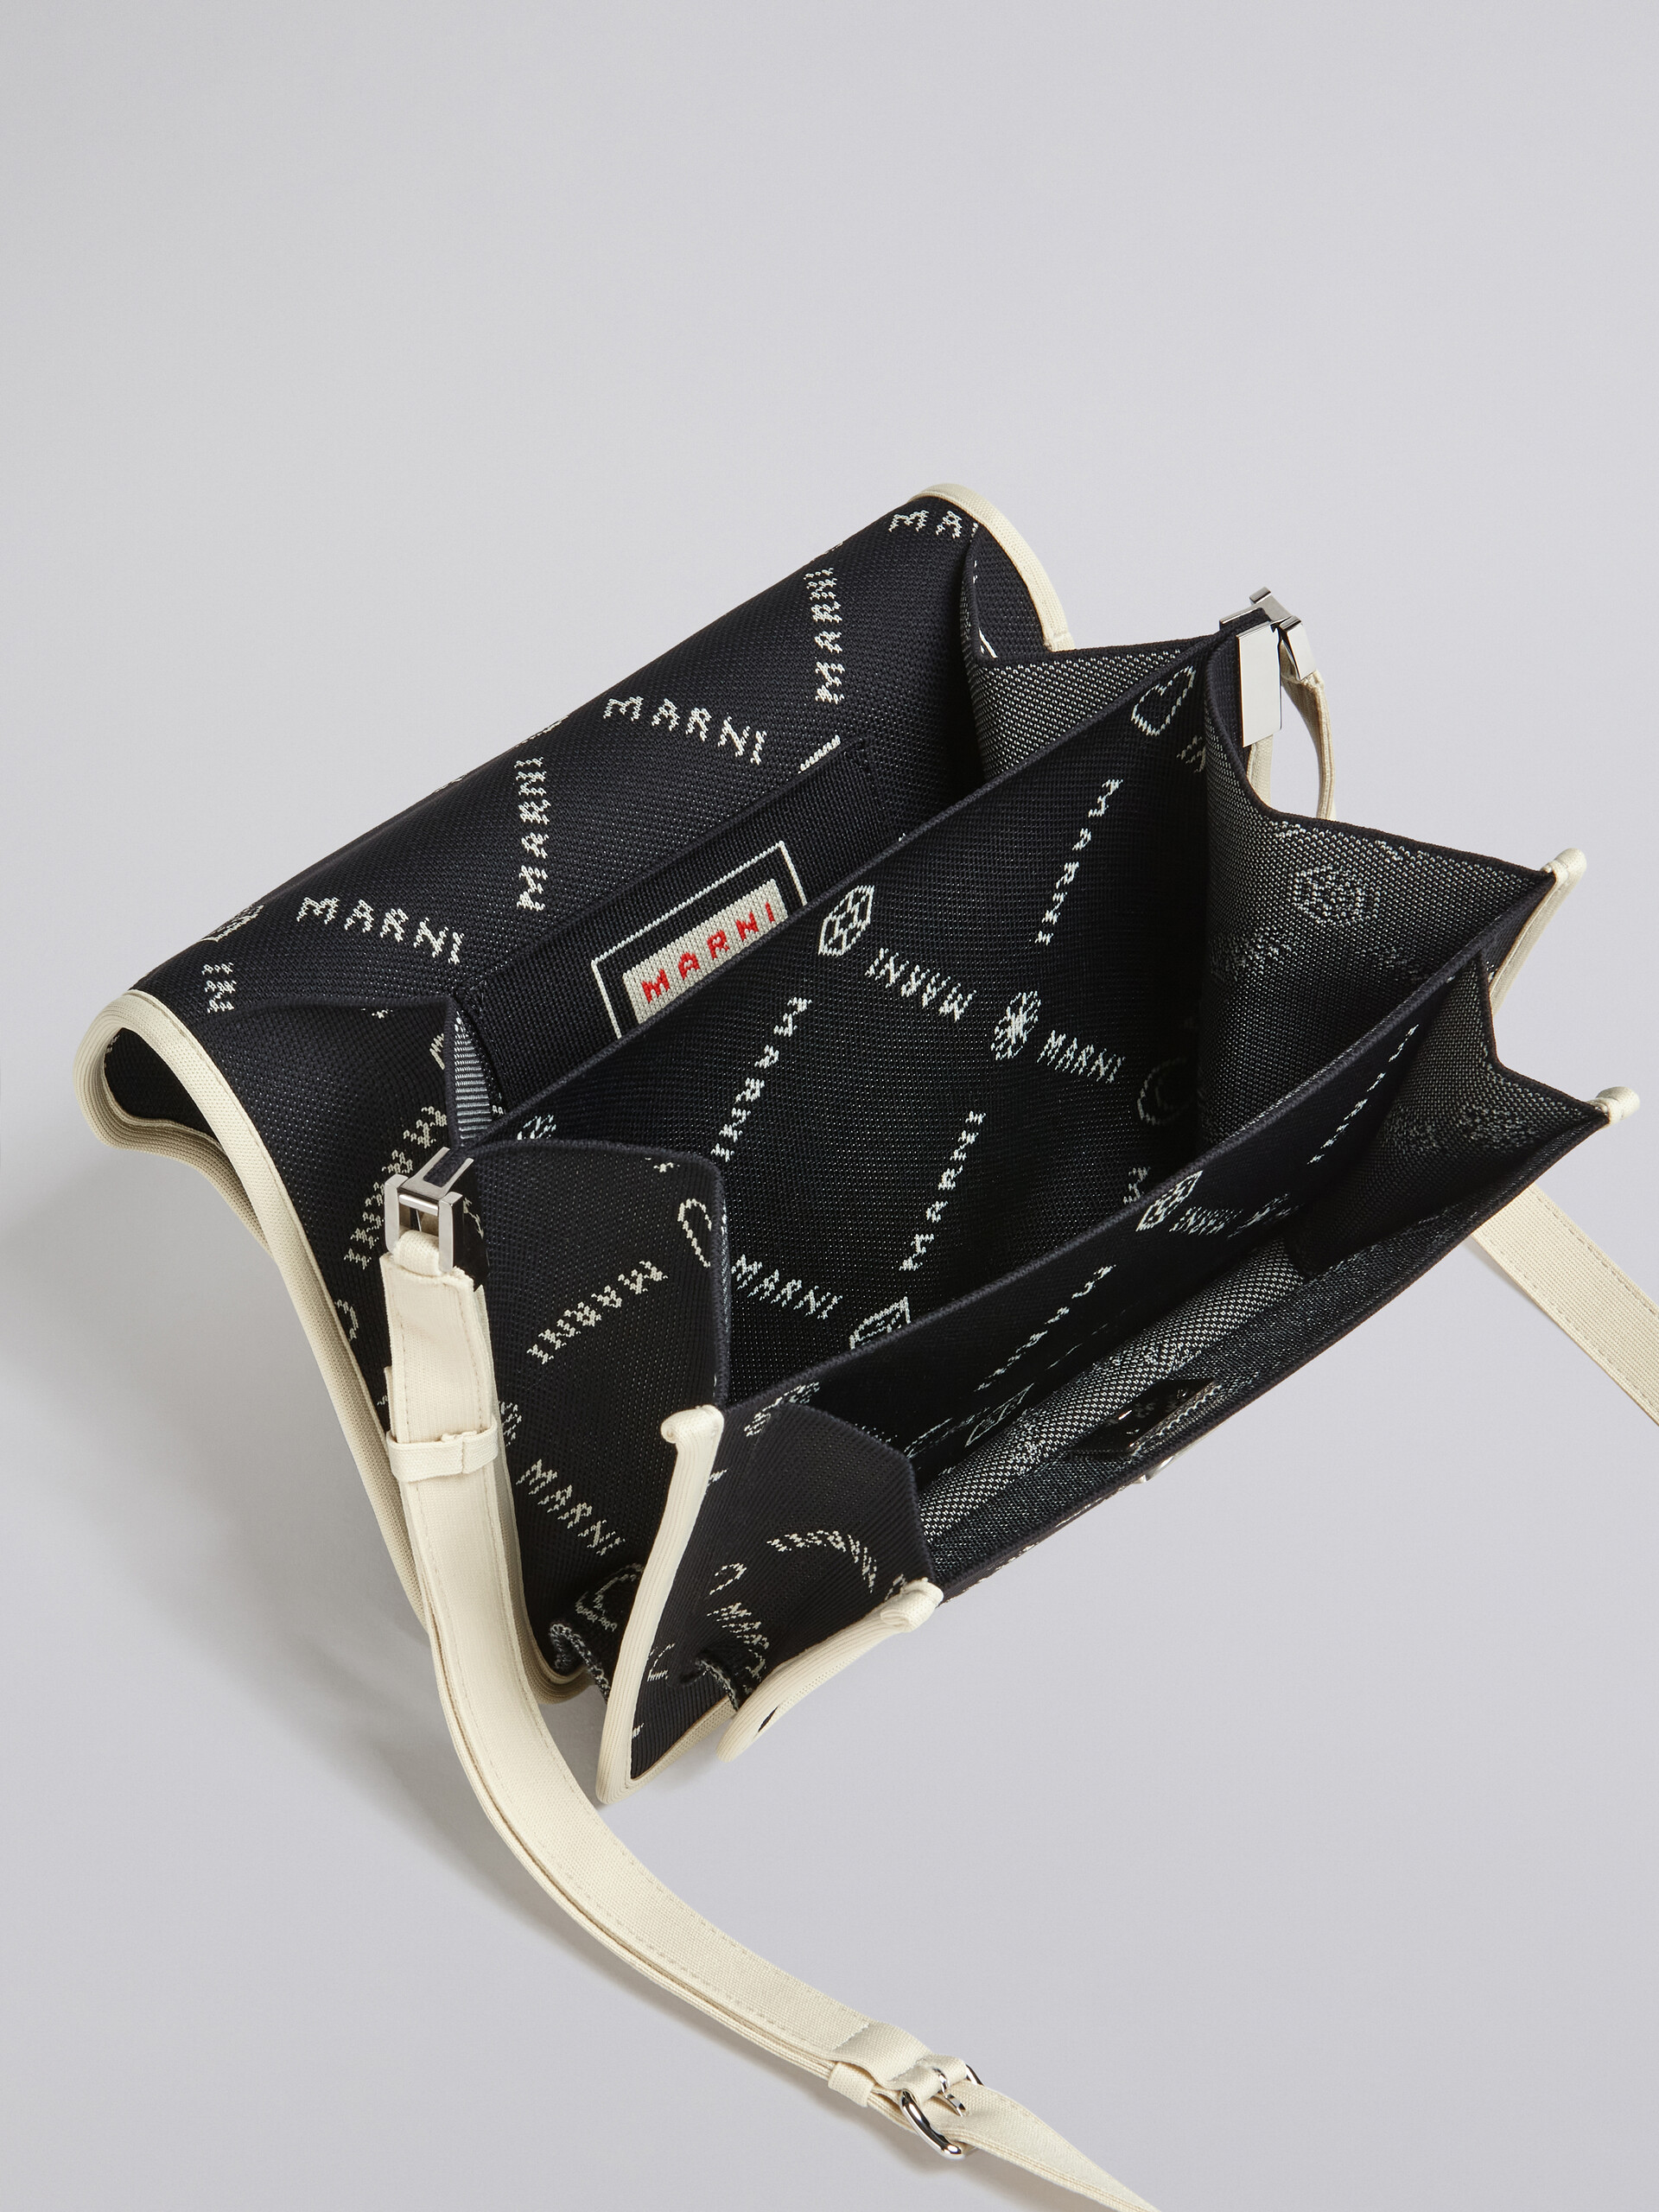 TRUNK SOFT large bag in black Marnigram jacquard - Shoulder Bags - Image 3